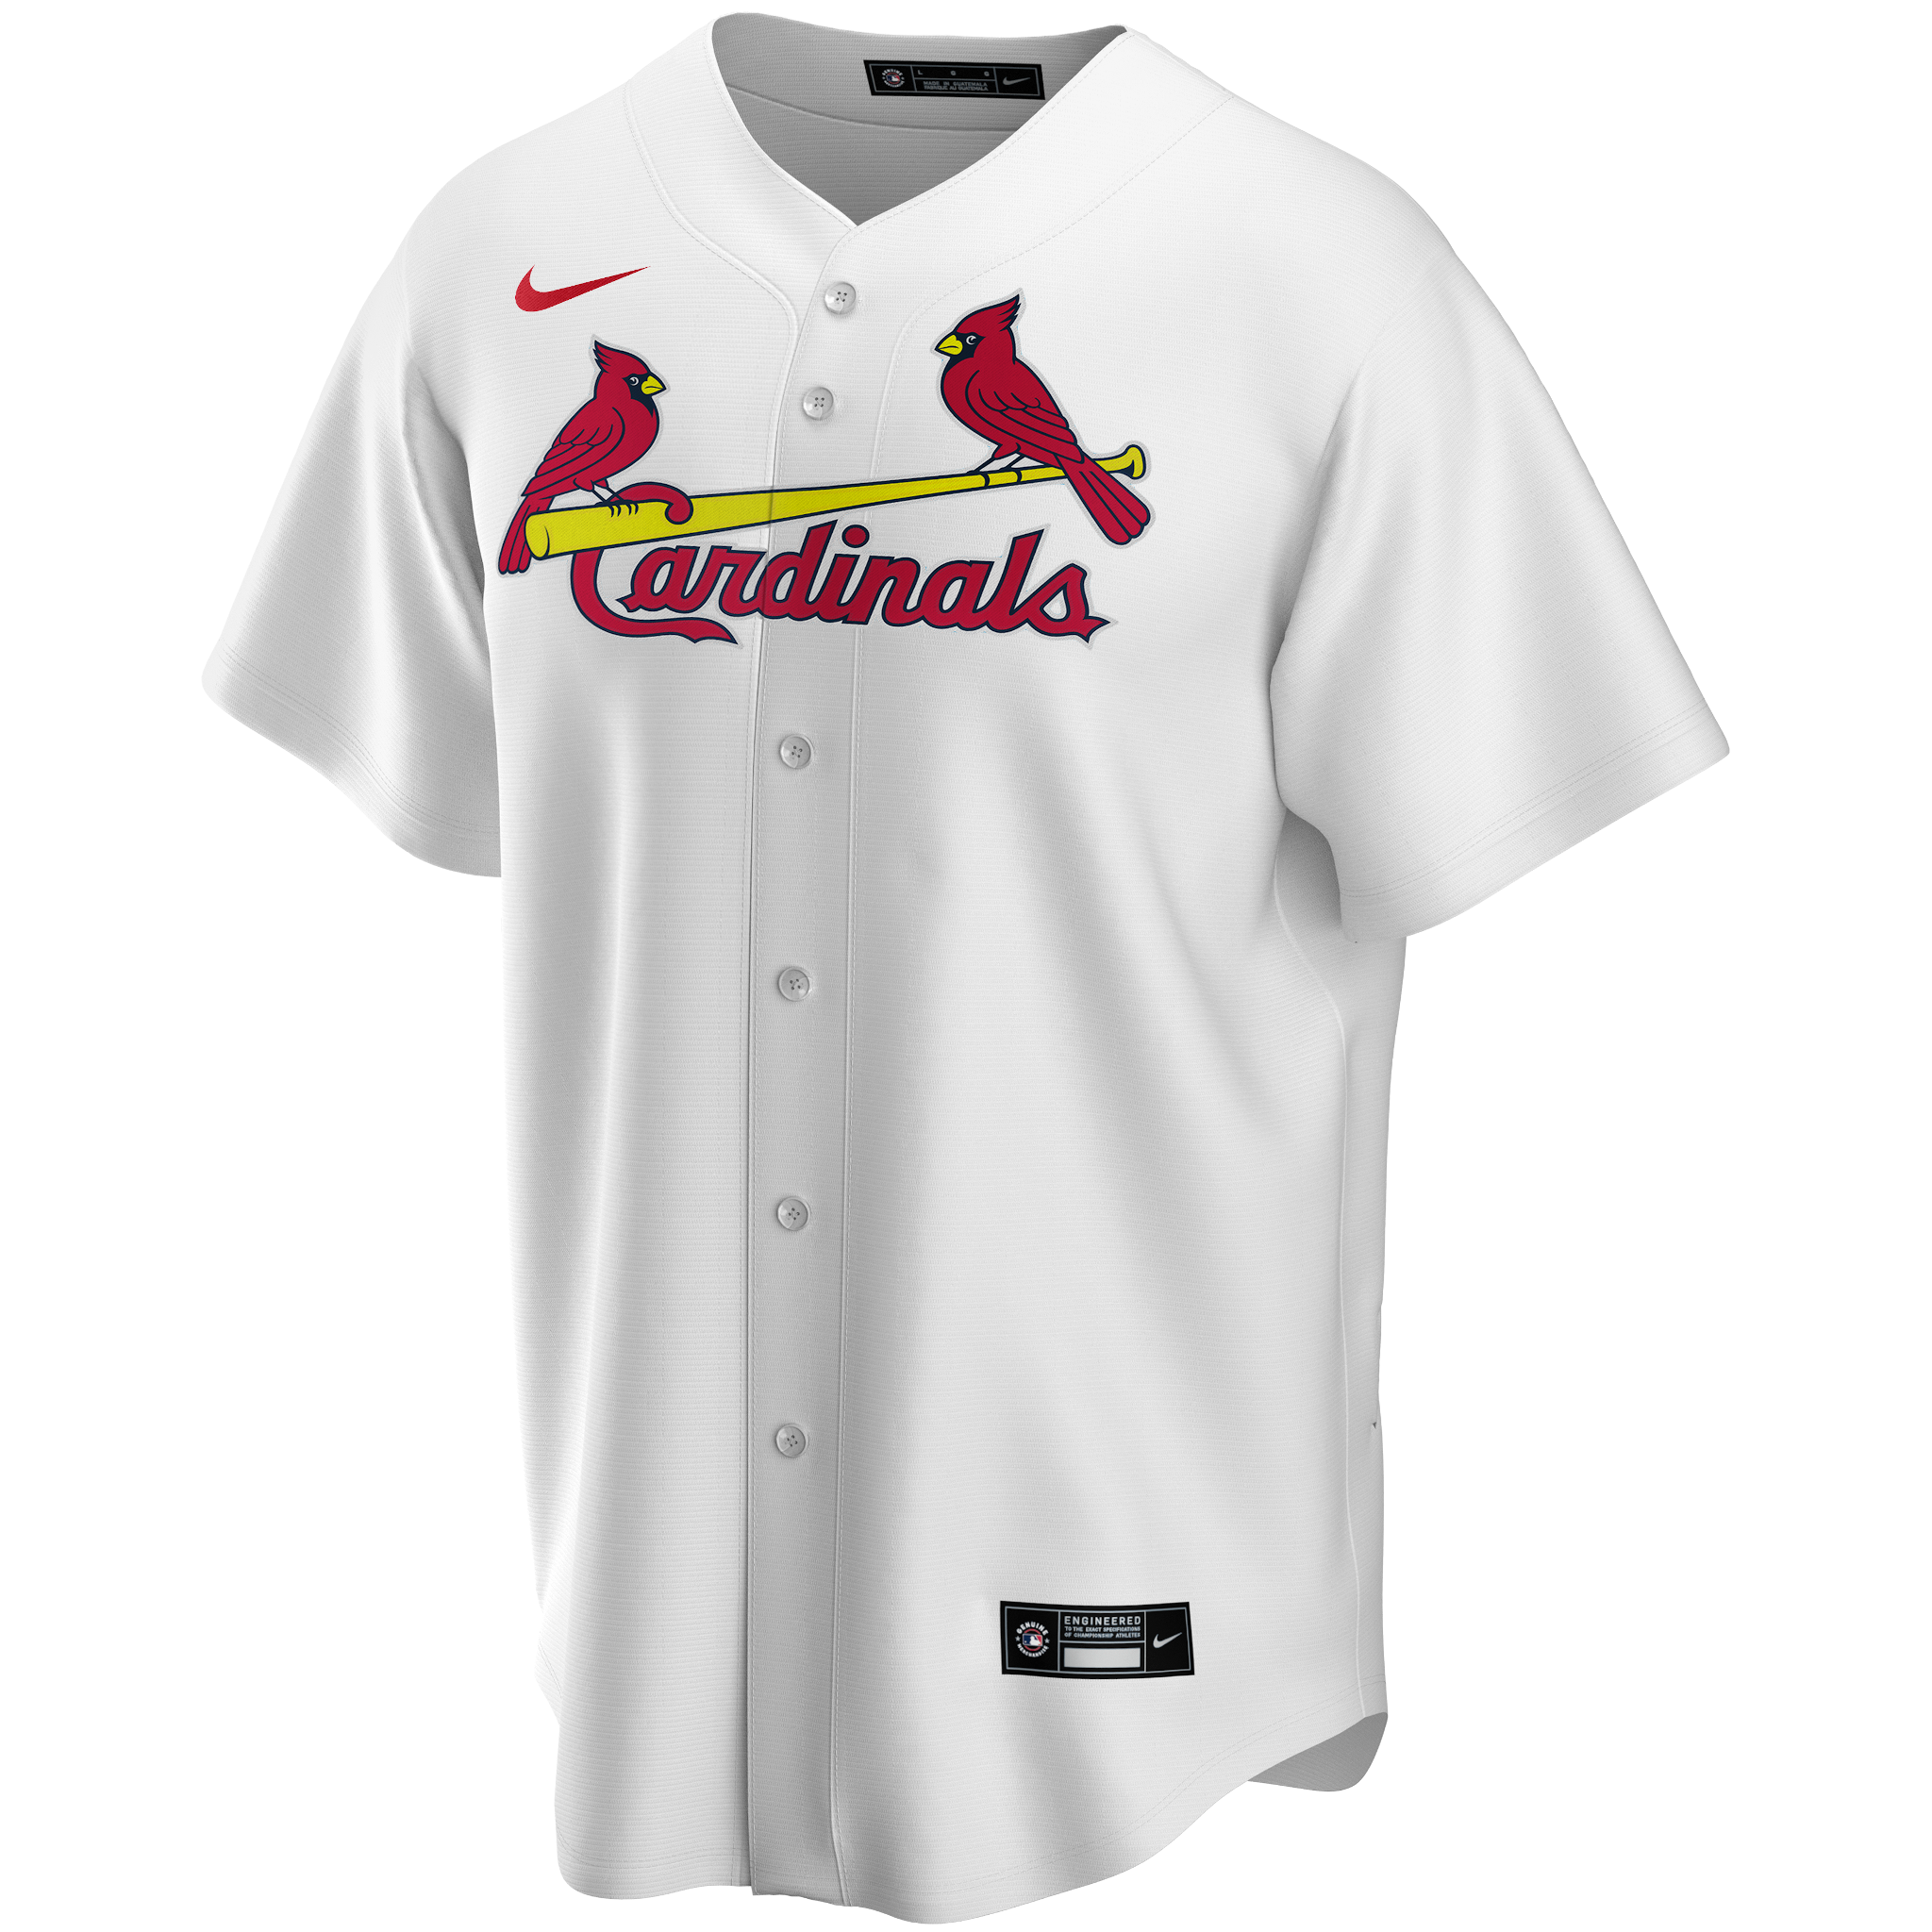 Wainwright Molina 2020 Shirt St Louis Baseball Shirt